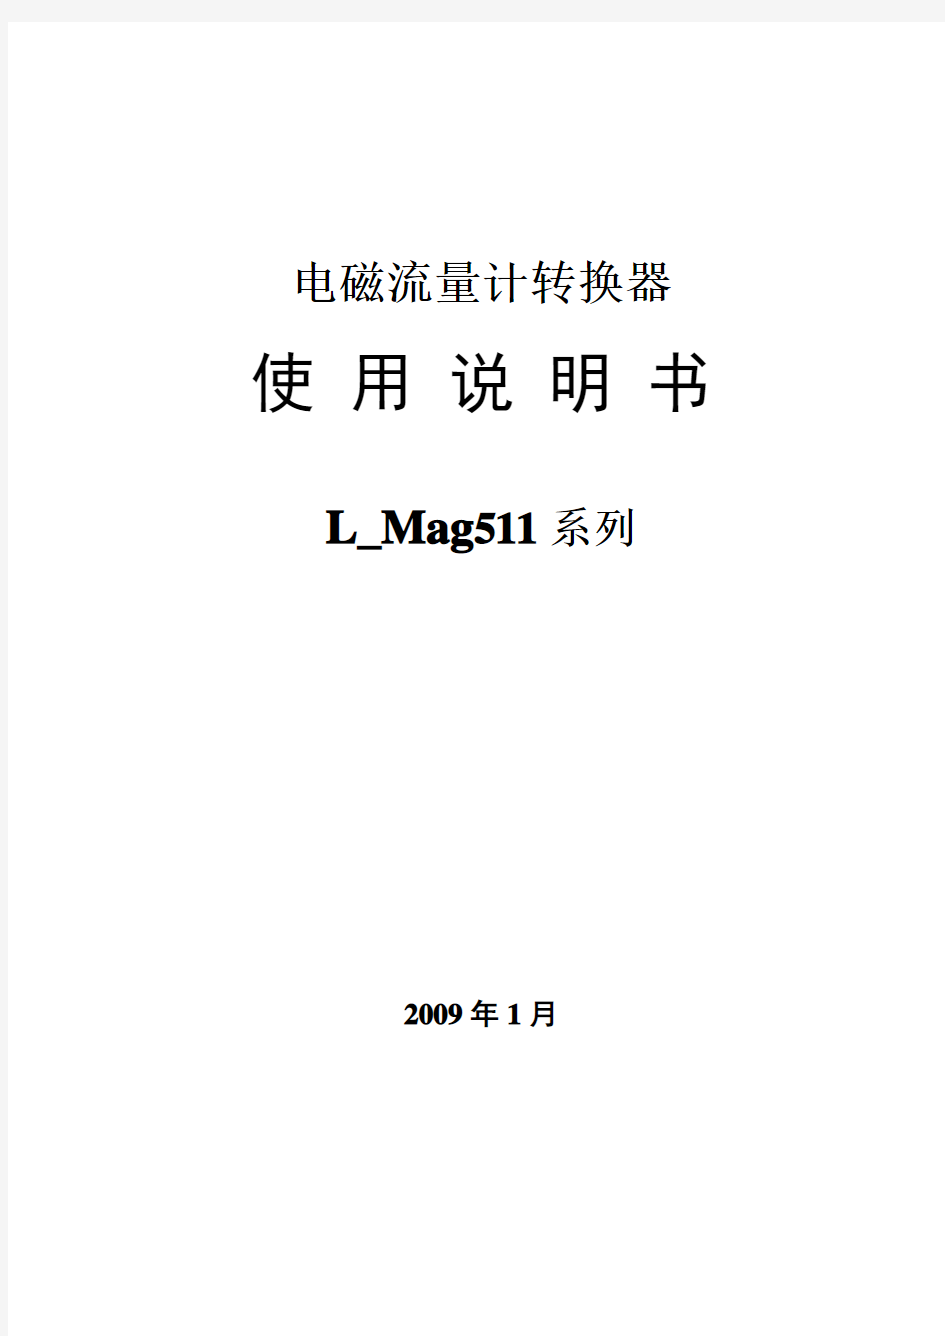 电磁流量转换器L_Mag511中文说明书